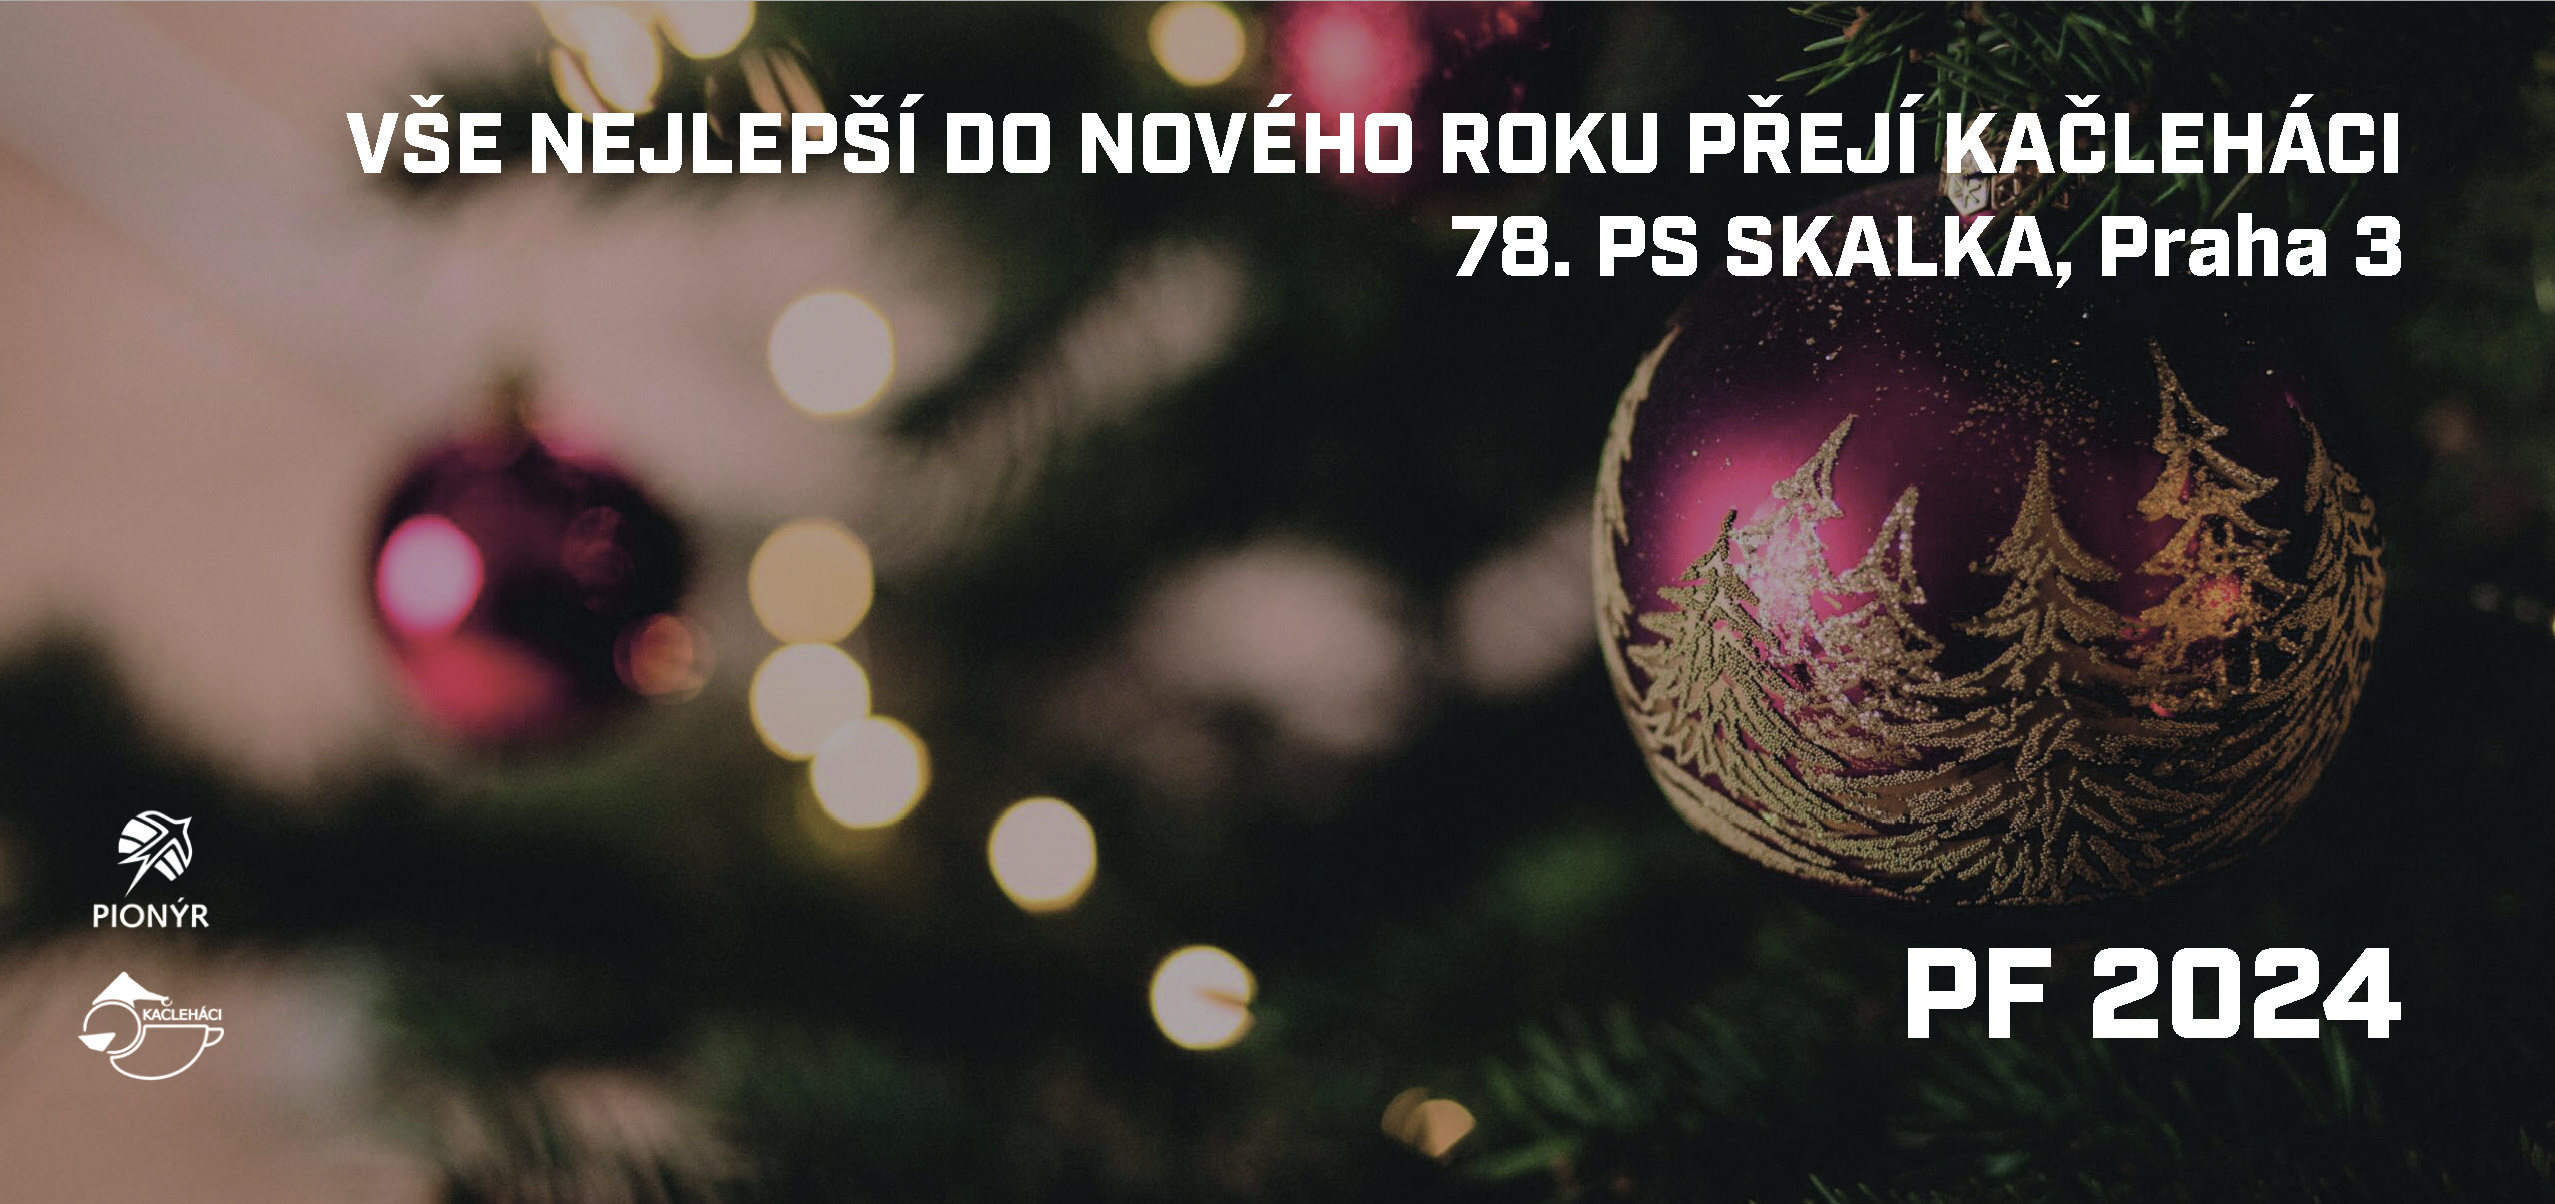 Novoroční přání oddílu Kačleháci. Vánoční ozdoba na stromečku.